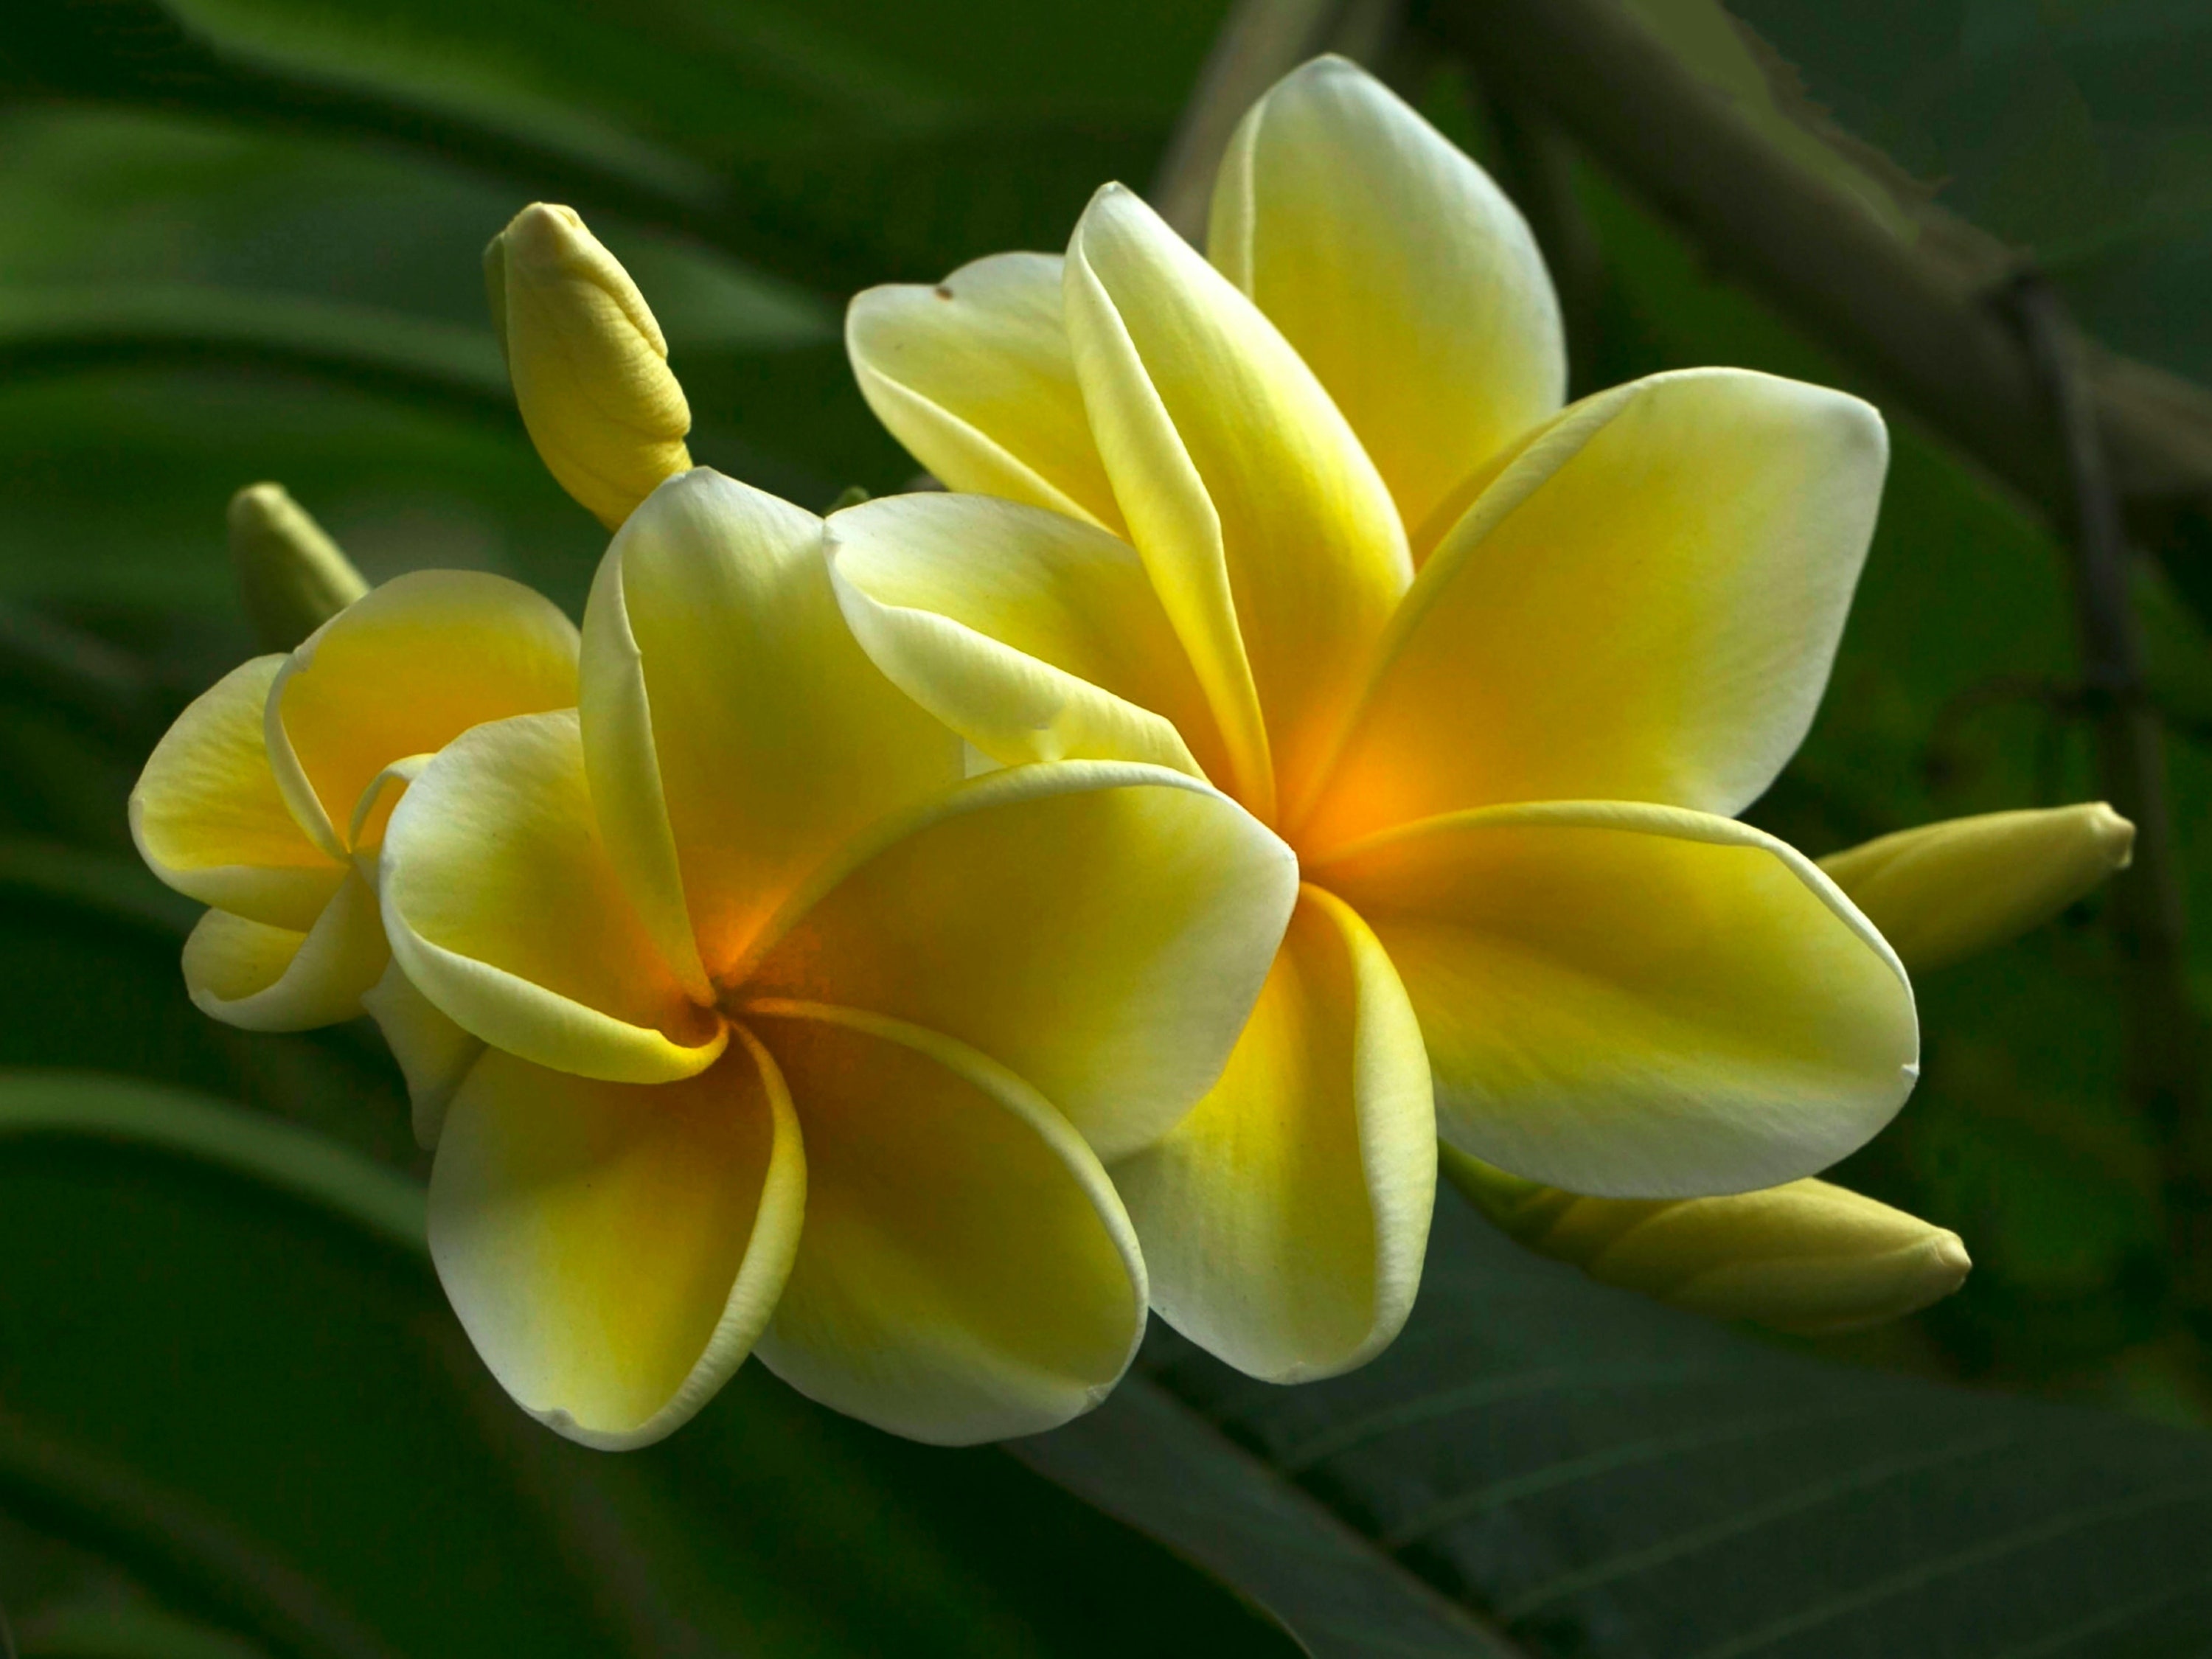 flor de mayo: la planta que representa la alegría y amor del mes